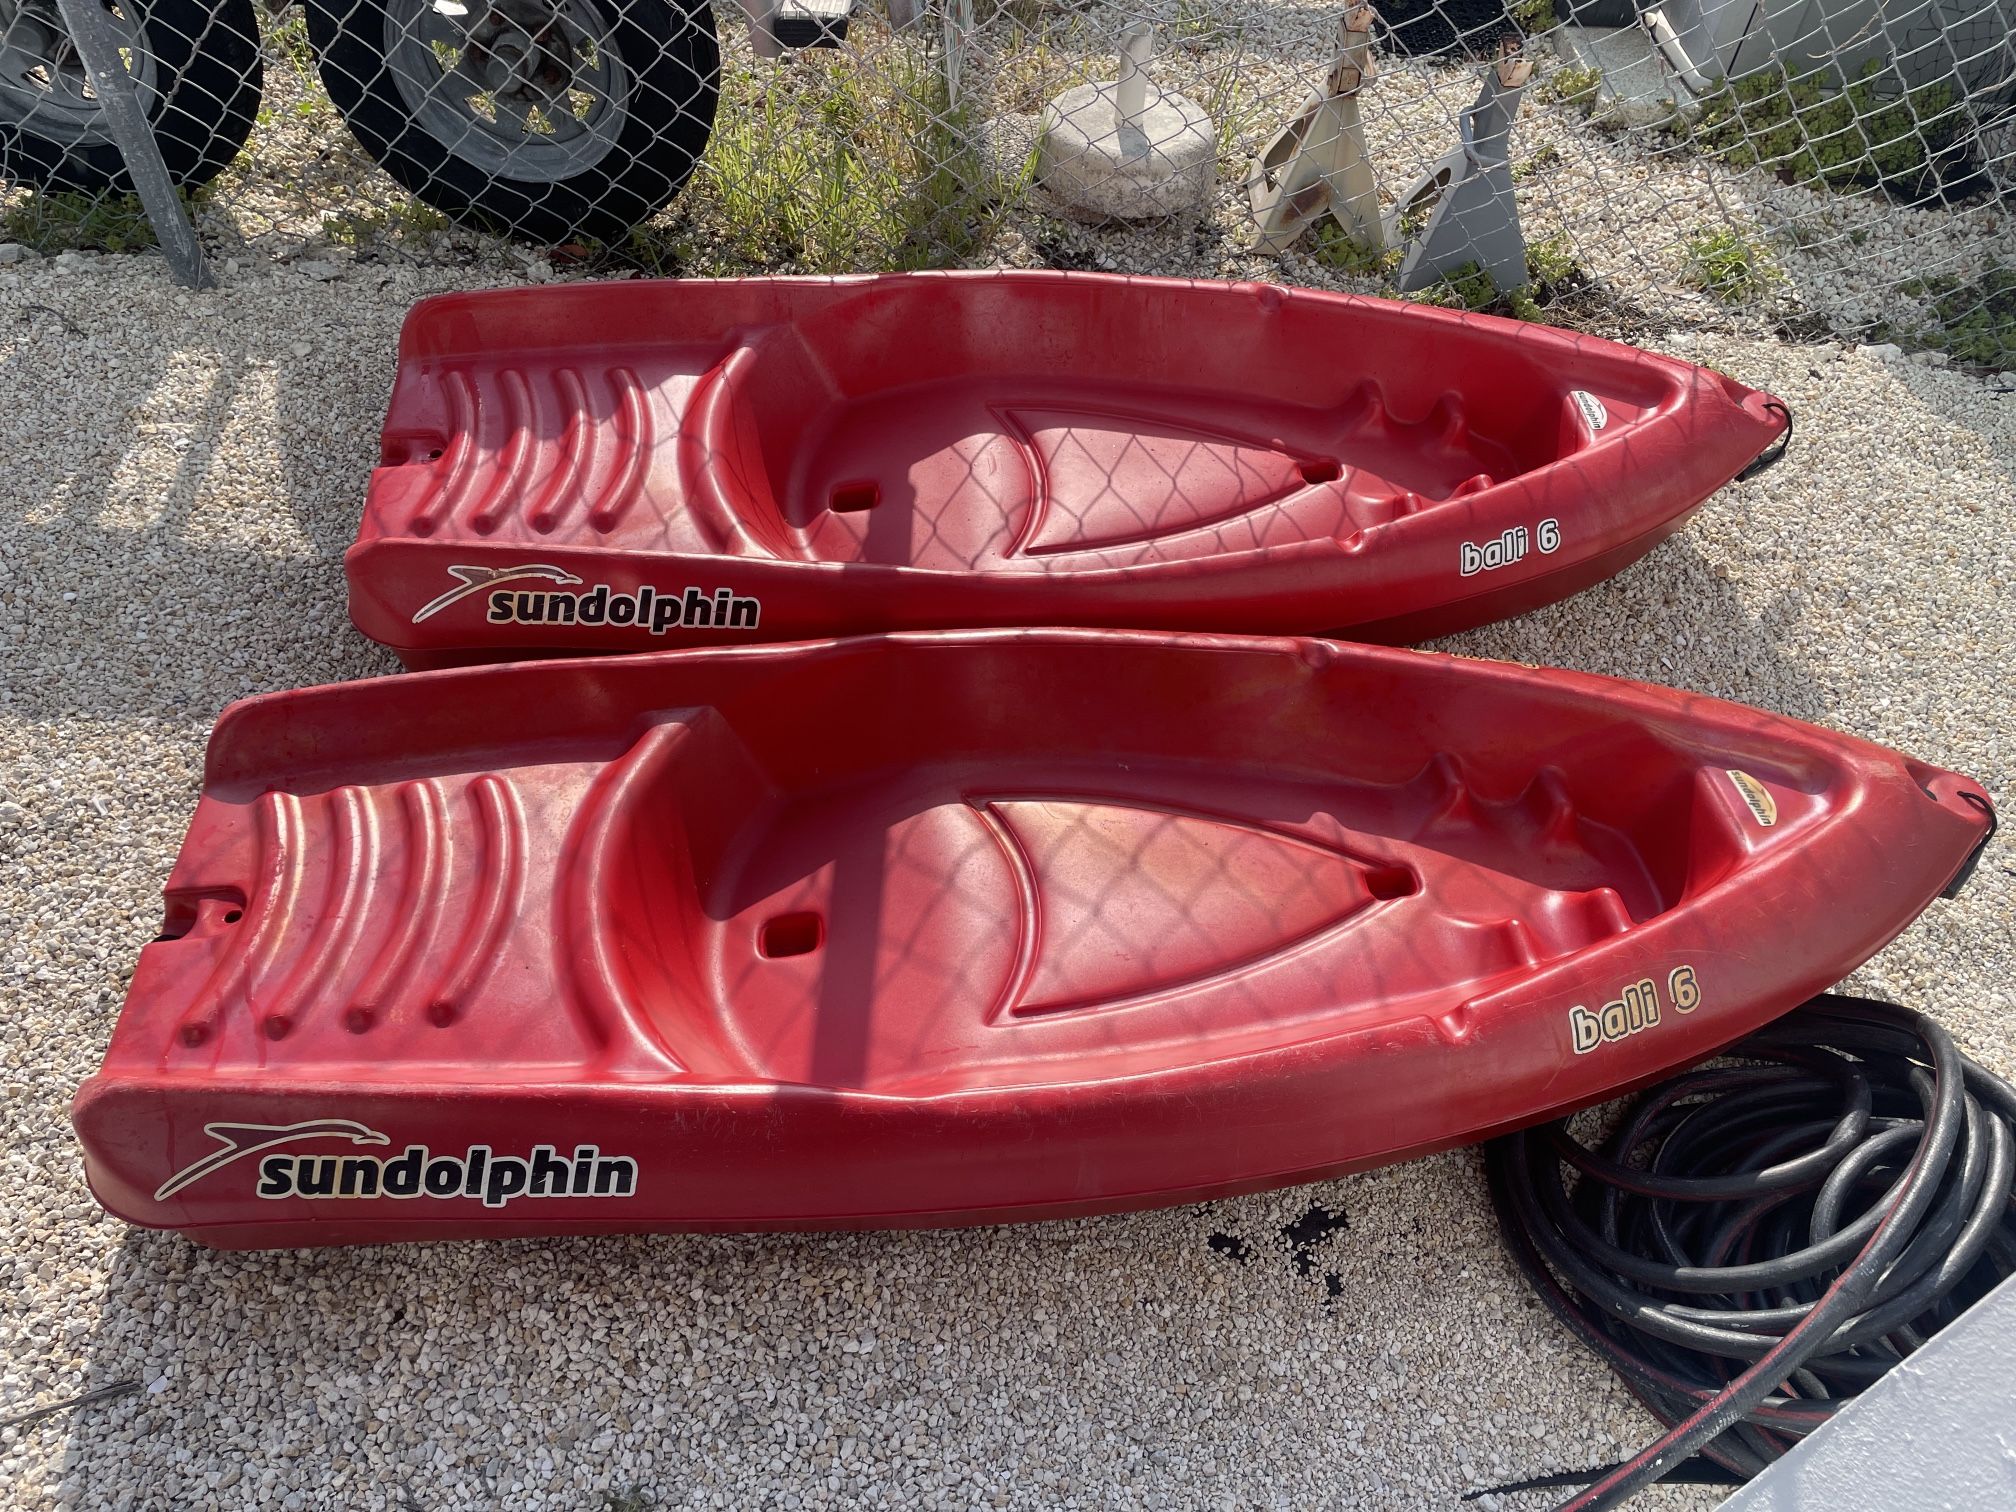 two kayaks